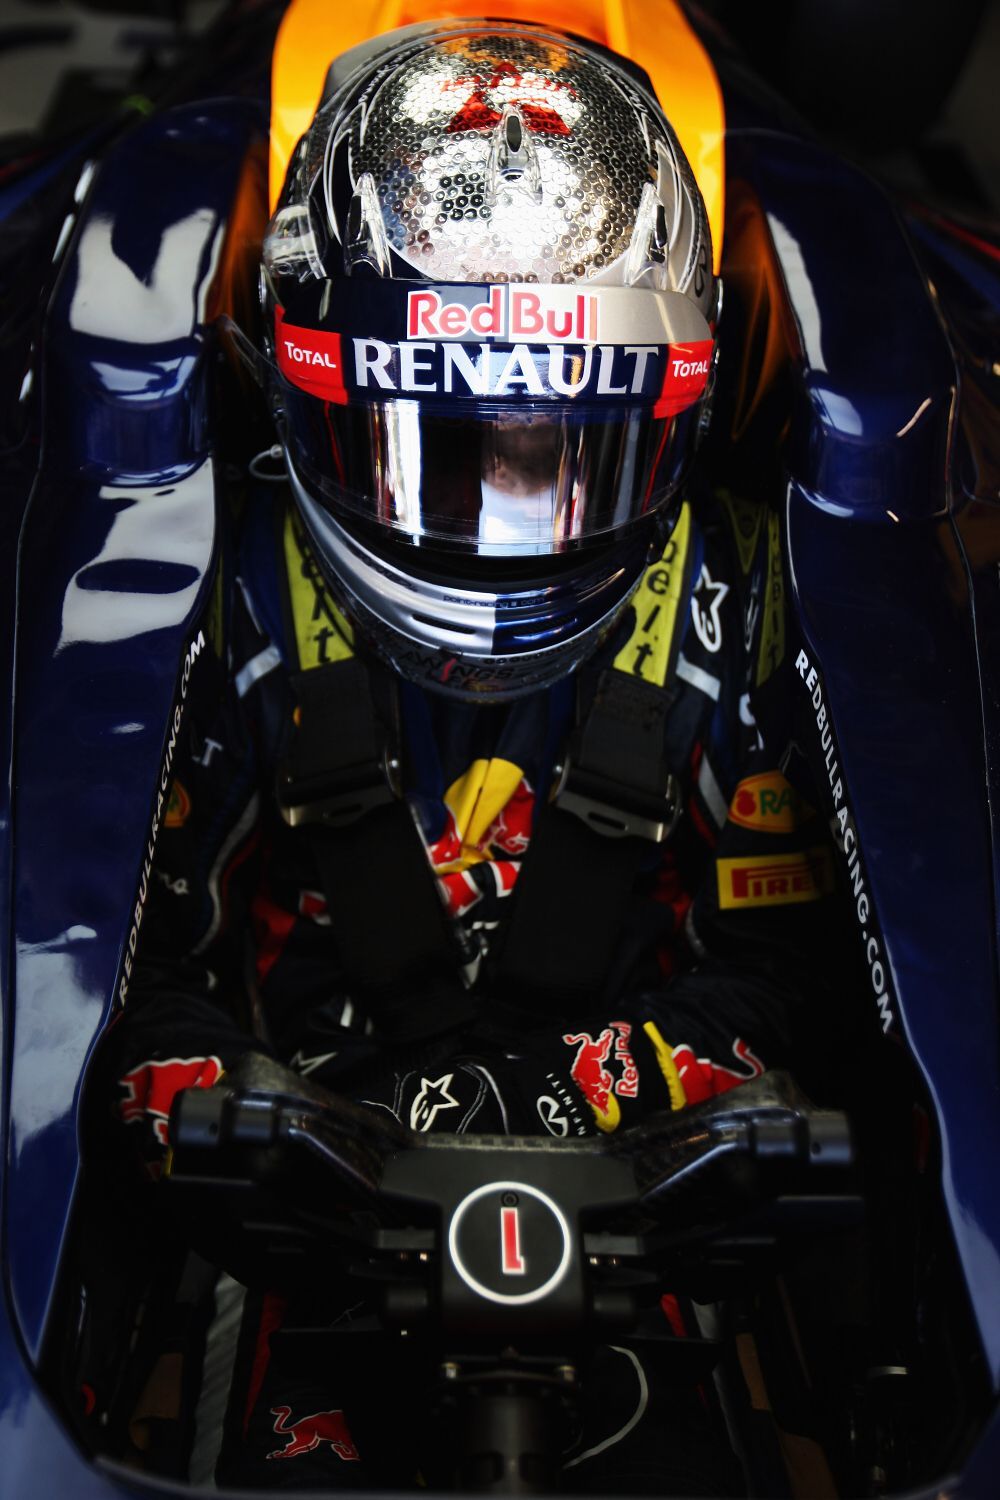 Velká cena Monaka formule 1, trénink (Sebastian Vettel, Red Bull)